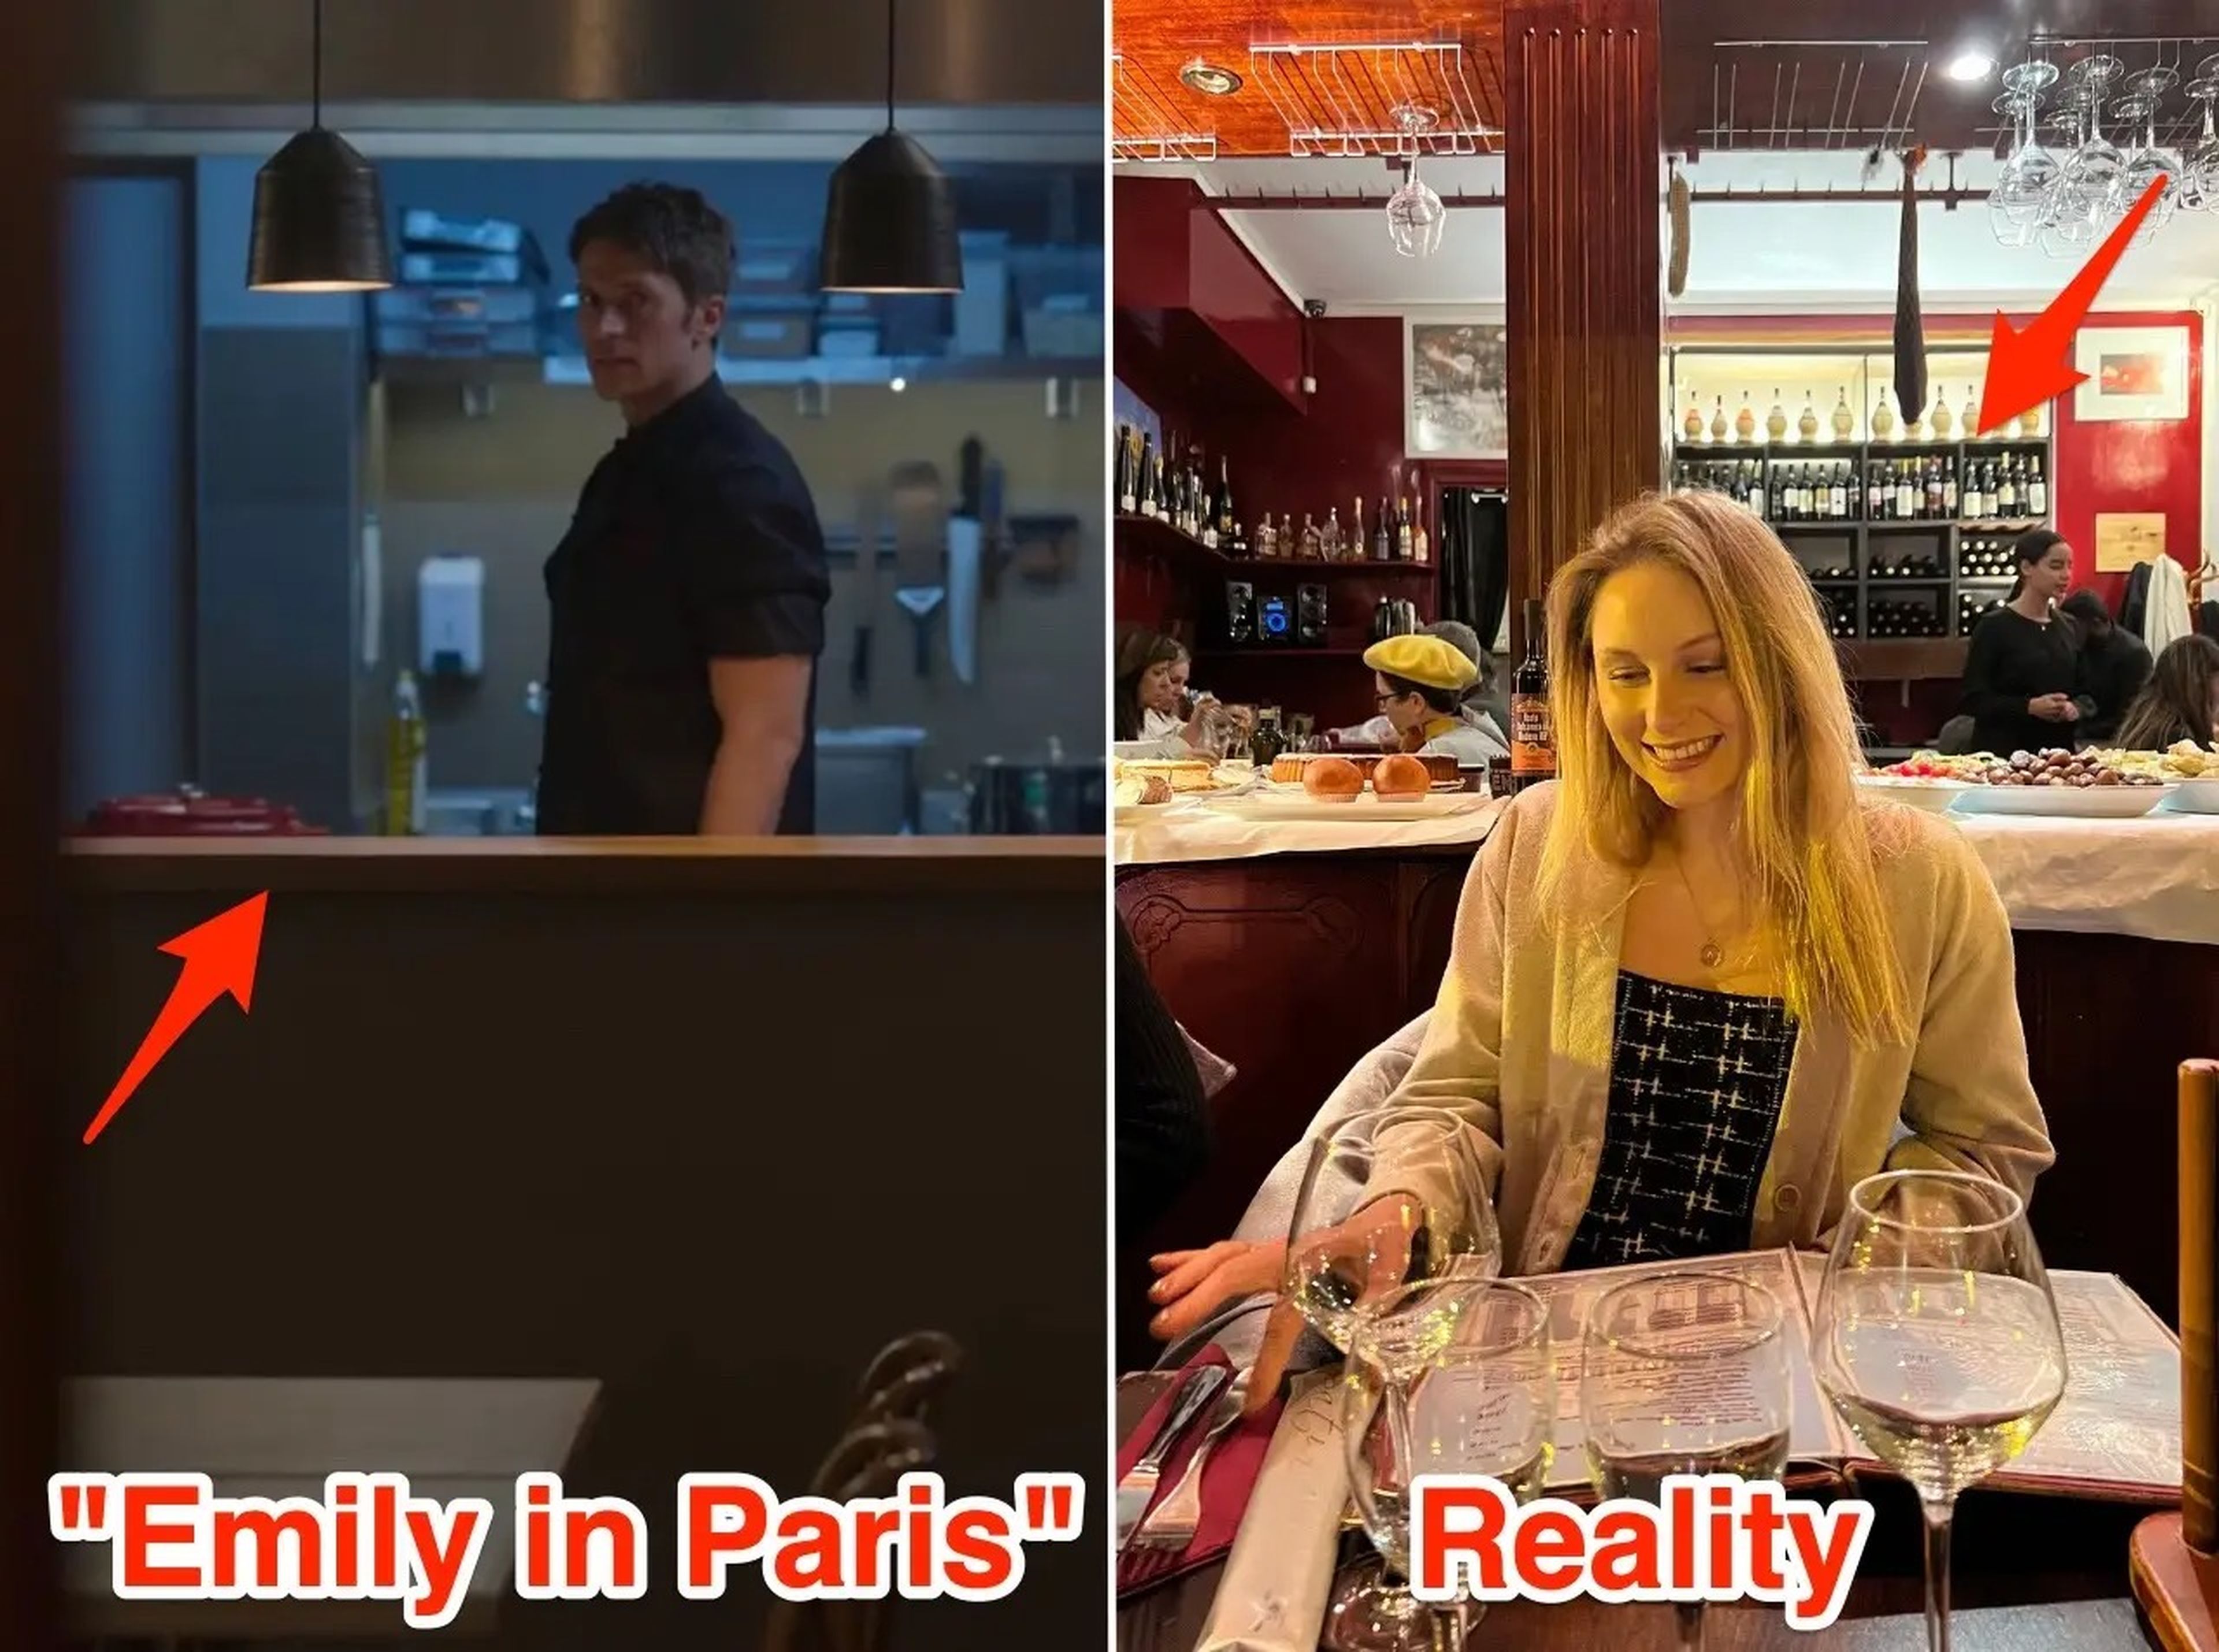 El interior del restaurante, en la serie y en la realidad.